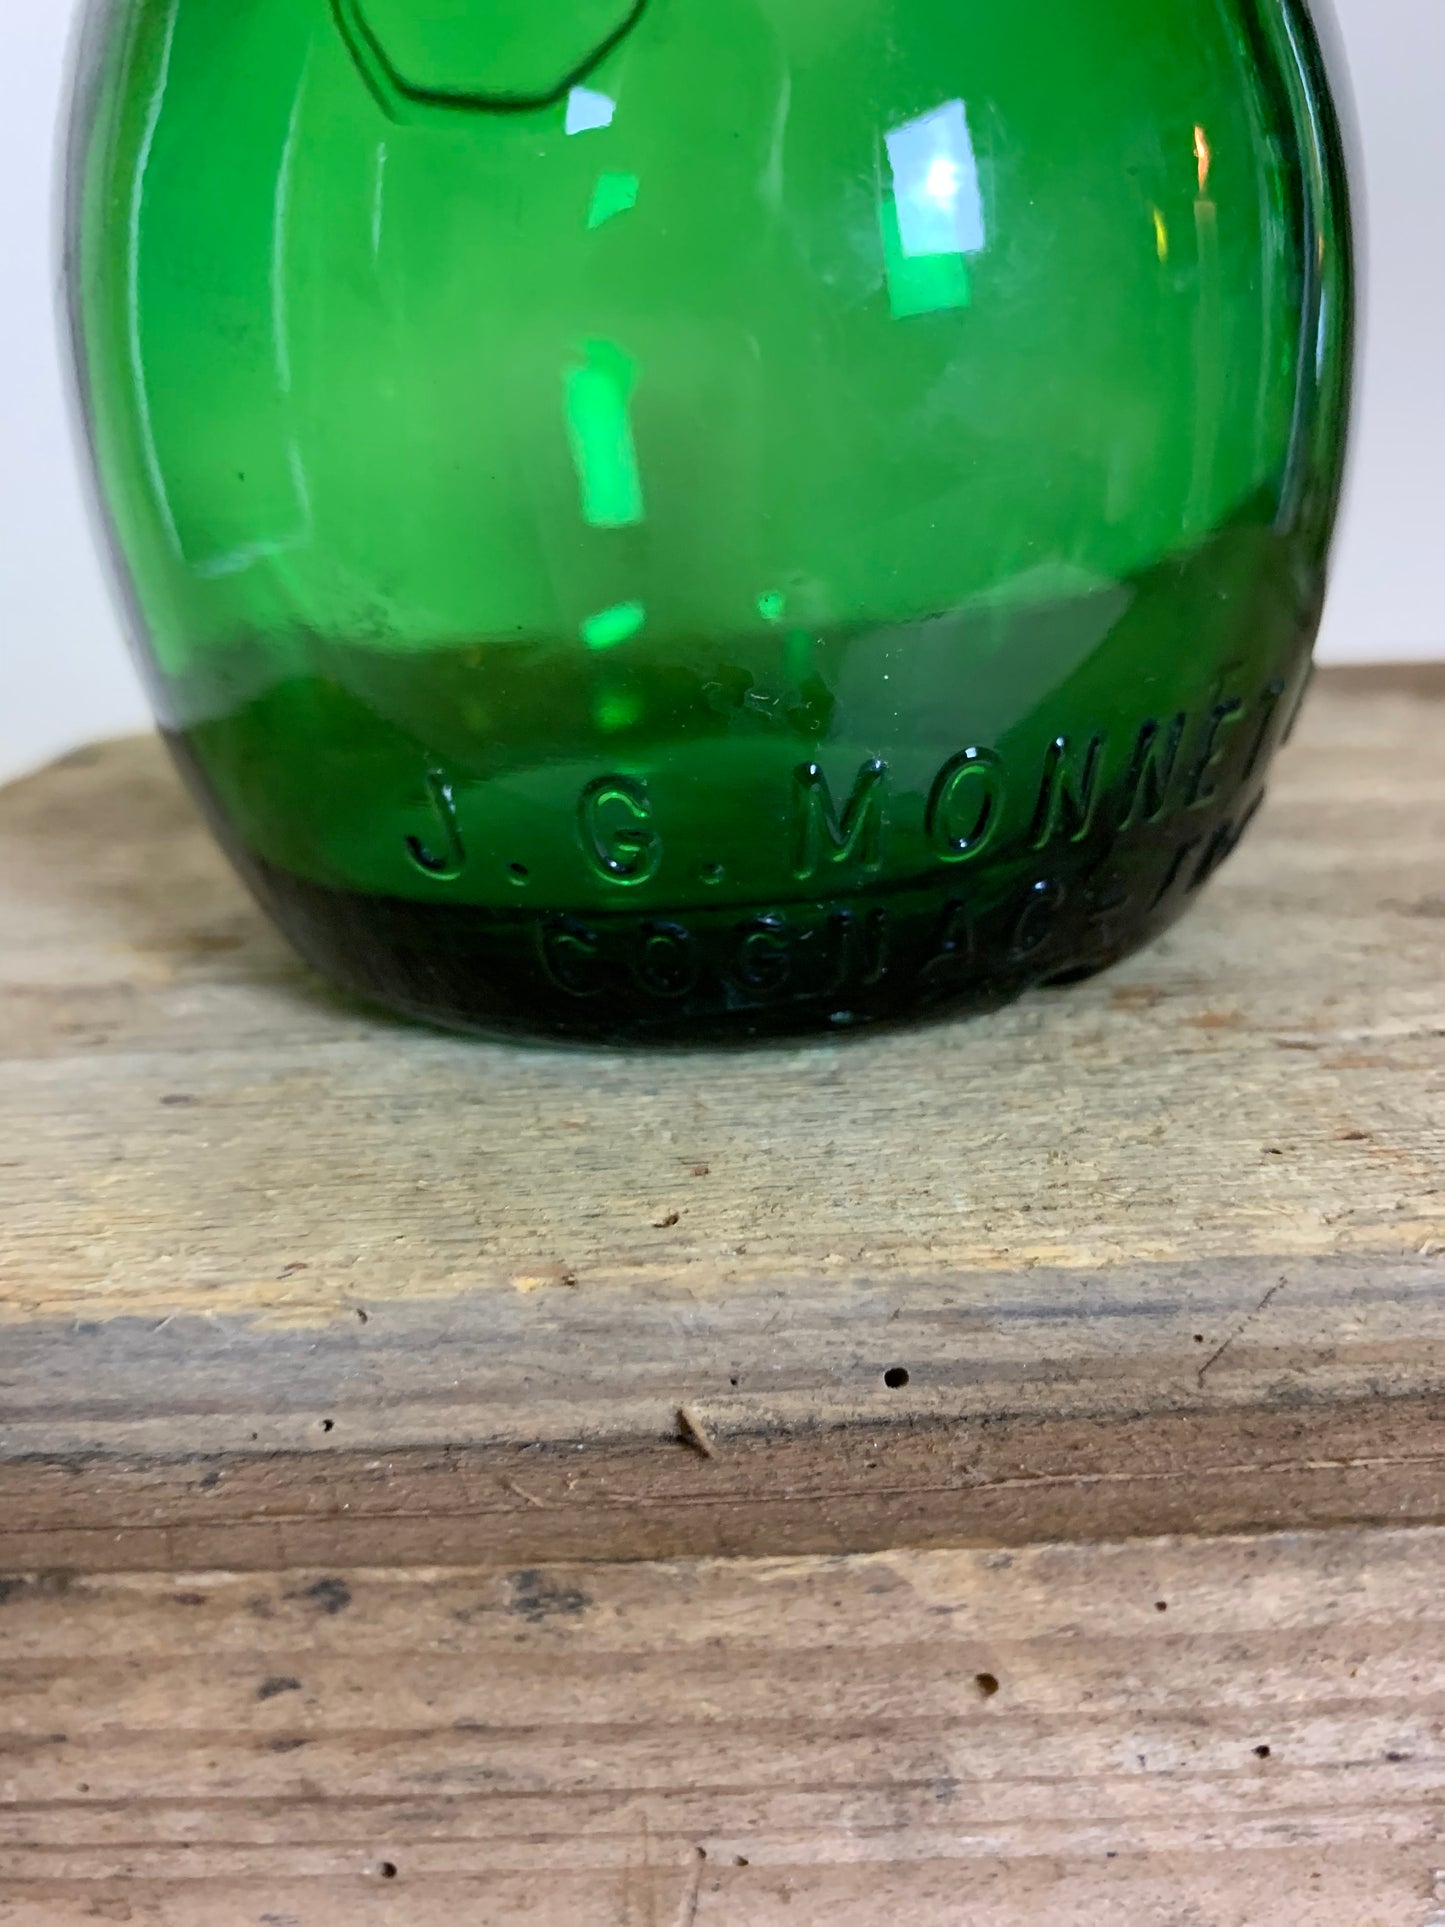 Grøn flaske i skøn “buttet” udgave